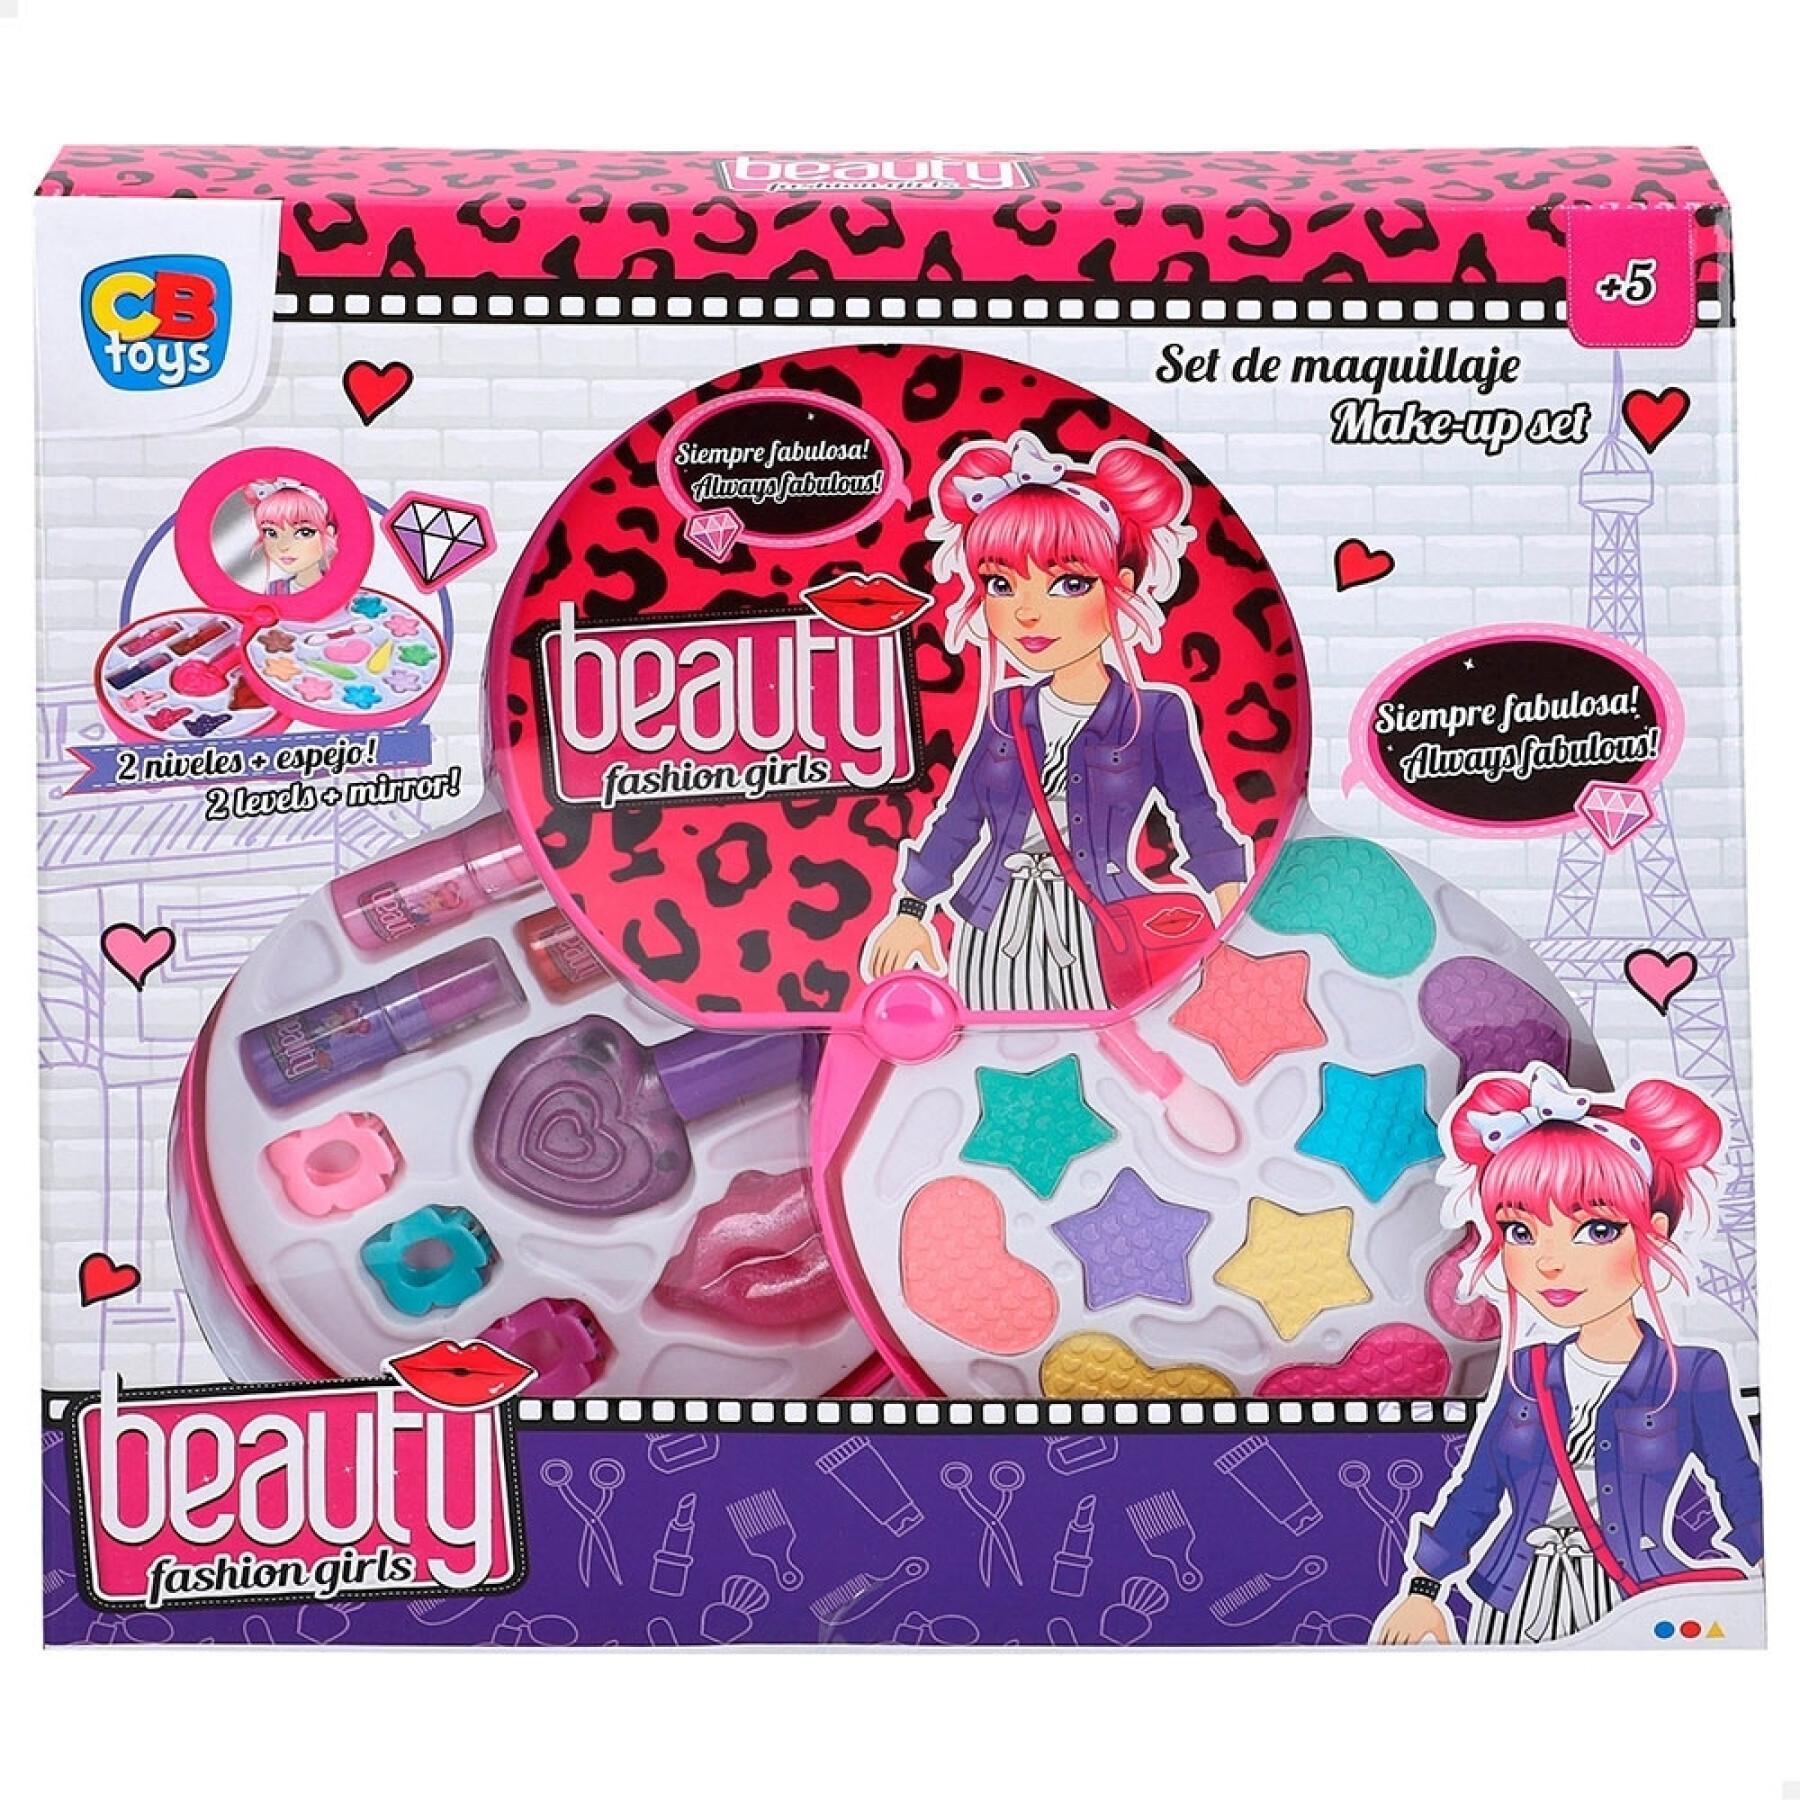 Caixa de maquilhagem 2 andares CB Toys Beauty Blister